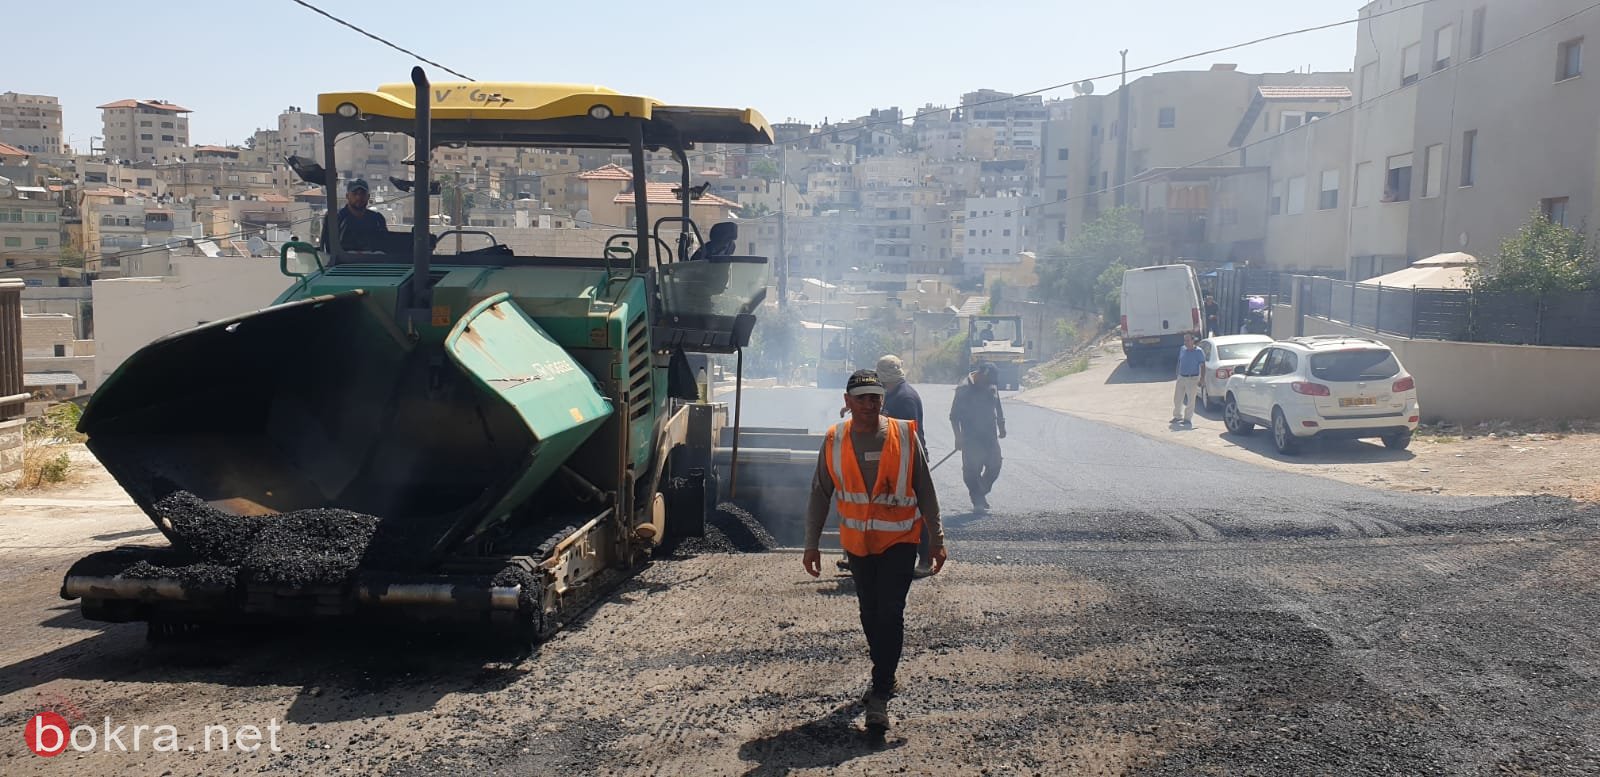 الناصرة: مشروع تعبيد شوارع المدينة يبدأ...حي البشارة يعبد اليوم-6